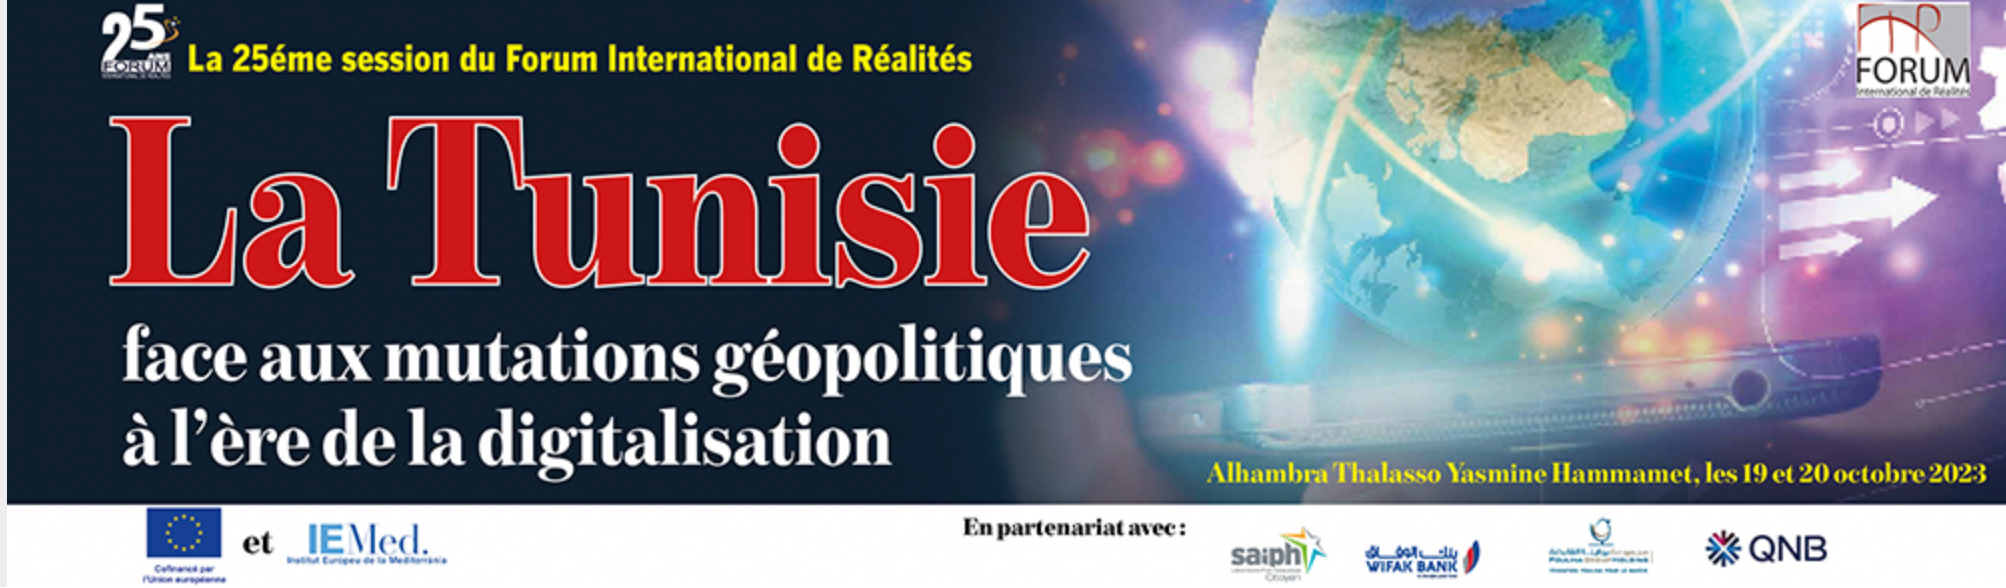 25ème session du Forum International de Réalités : “La Tunisie face aux mutations géopolitiques à l’ère de la digitalisation”.